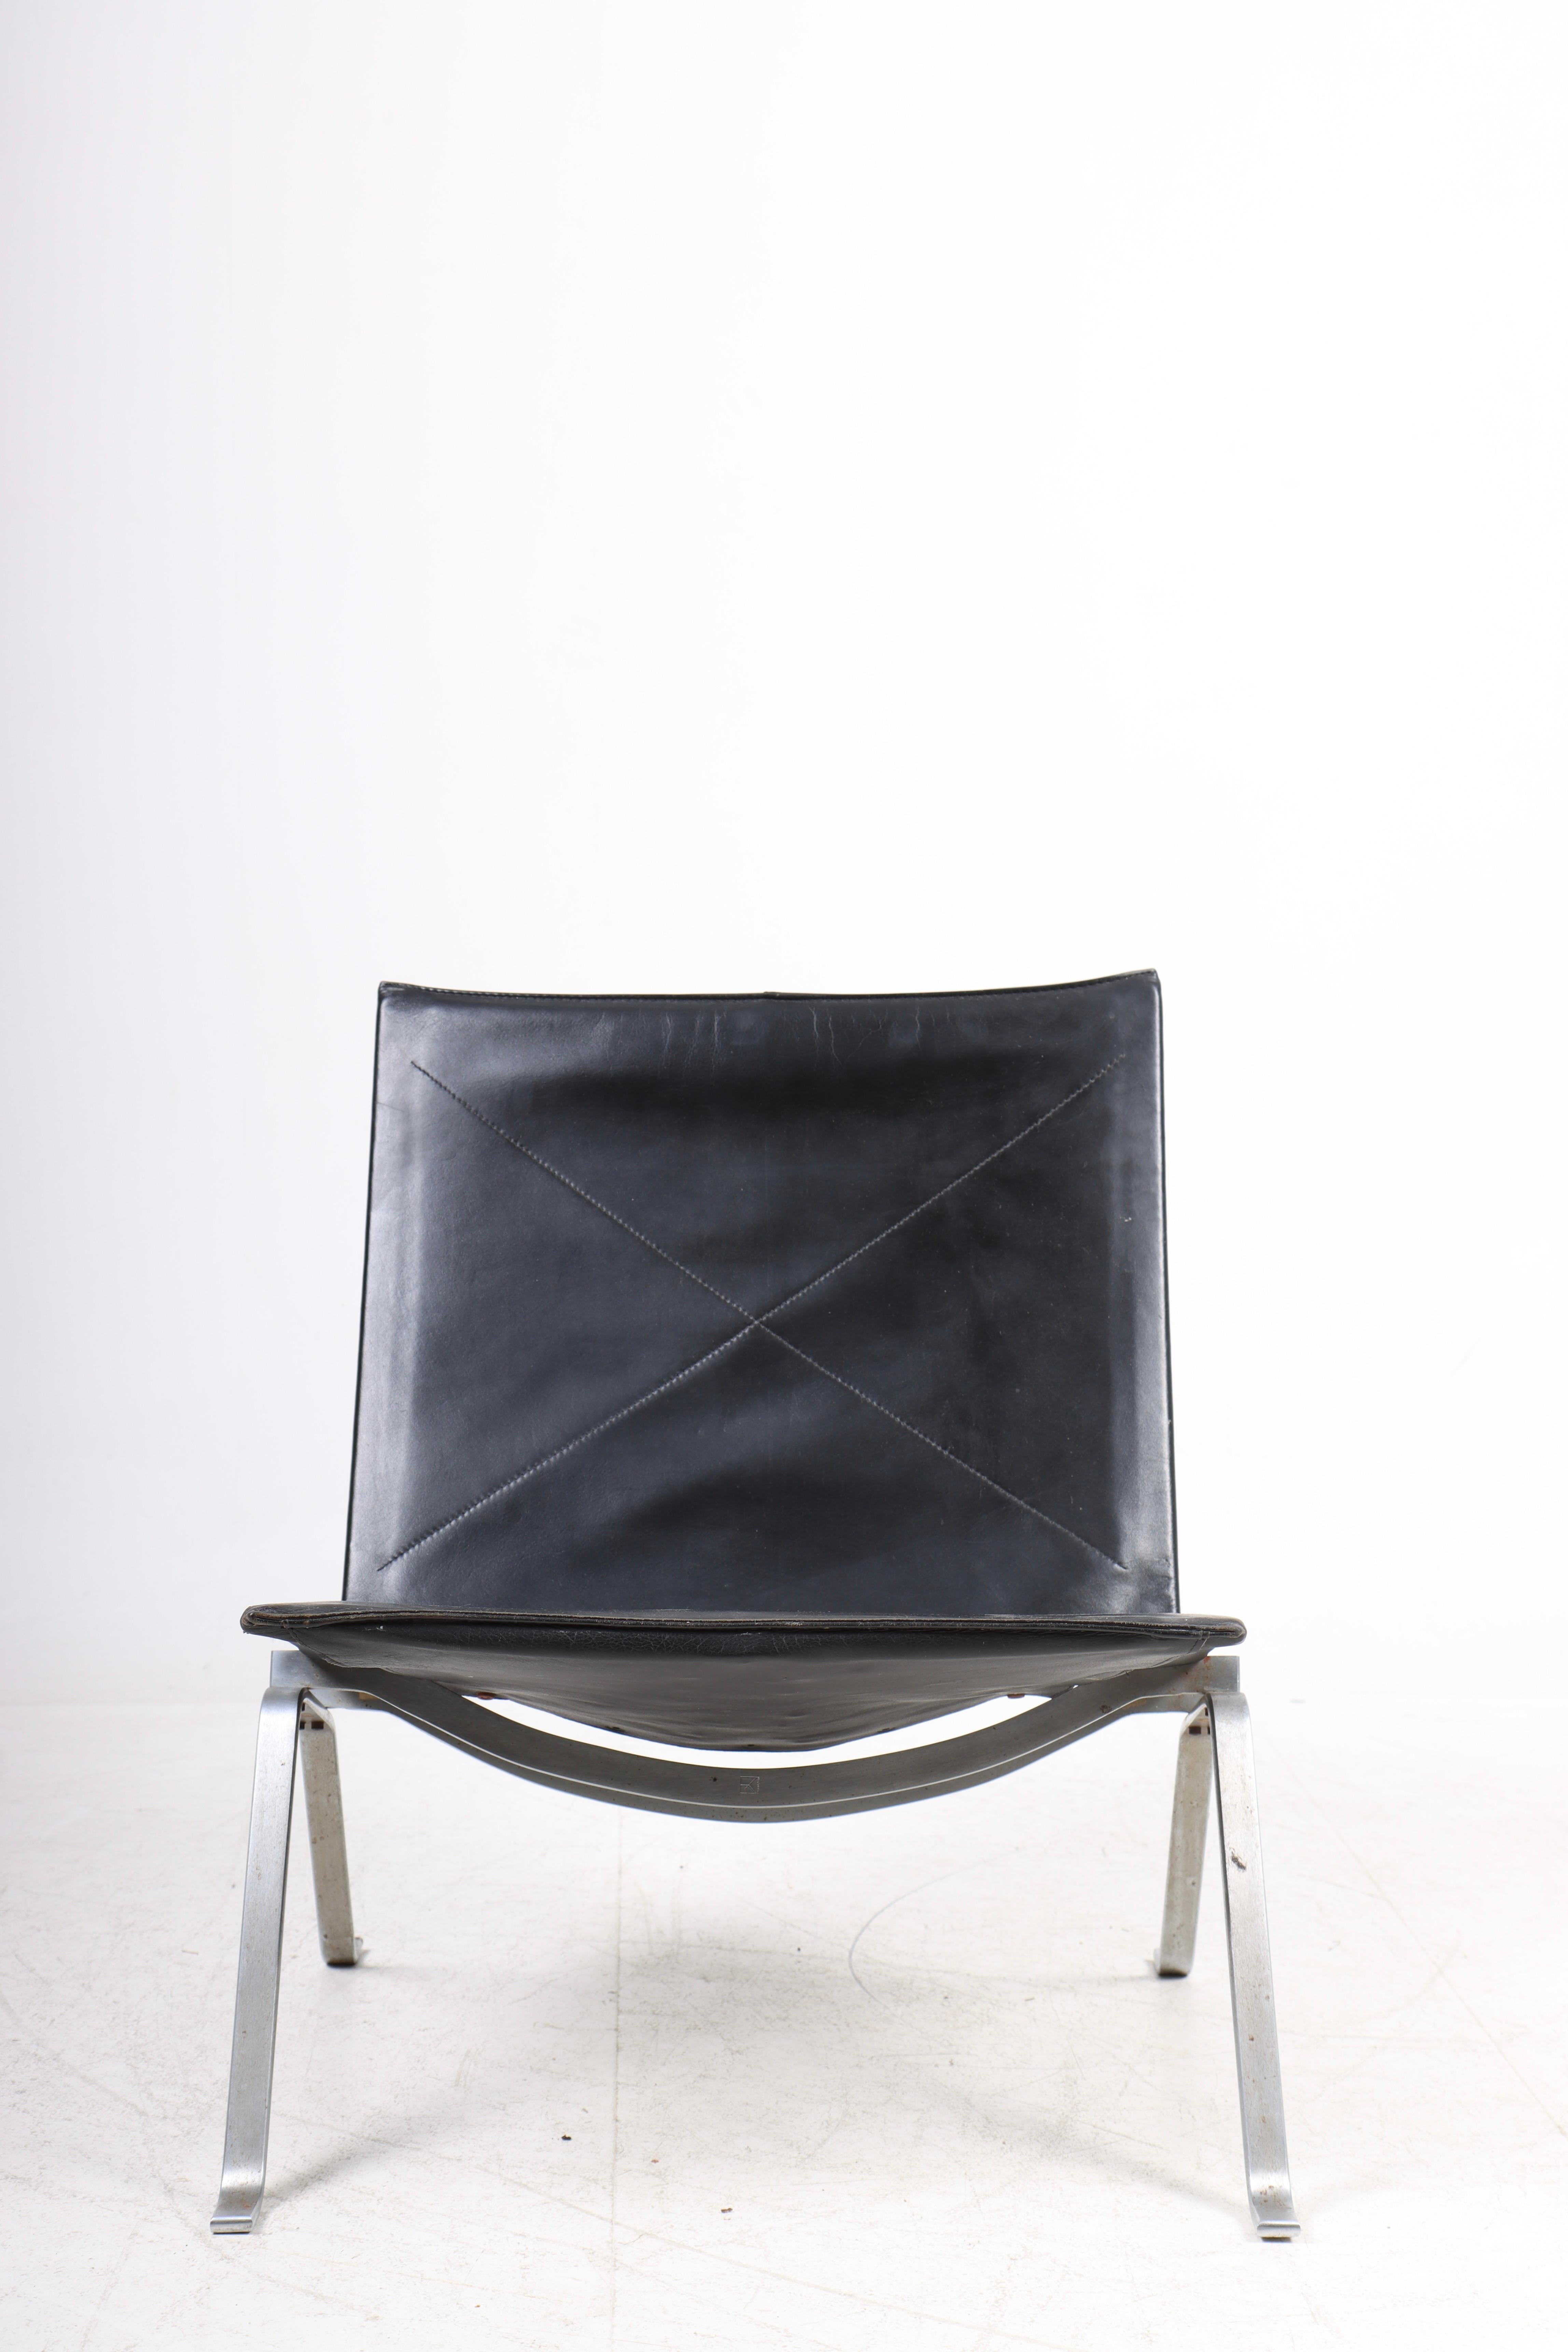 Toller PK22 Lounge-Sessel aus patiniertem Leder. Entworfen von Maa. Poul Kjærholm für Kold Christensen. Hergestellt in Dänemark. Ursprünglicher Zustand.